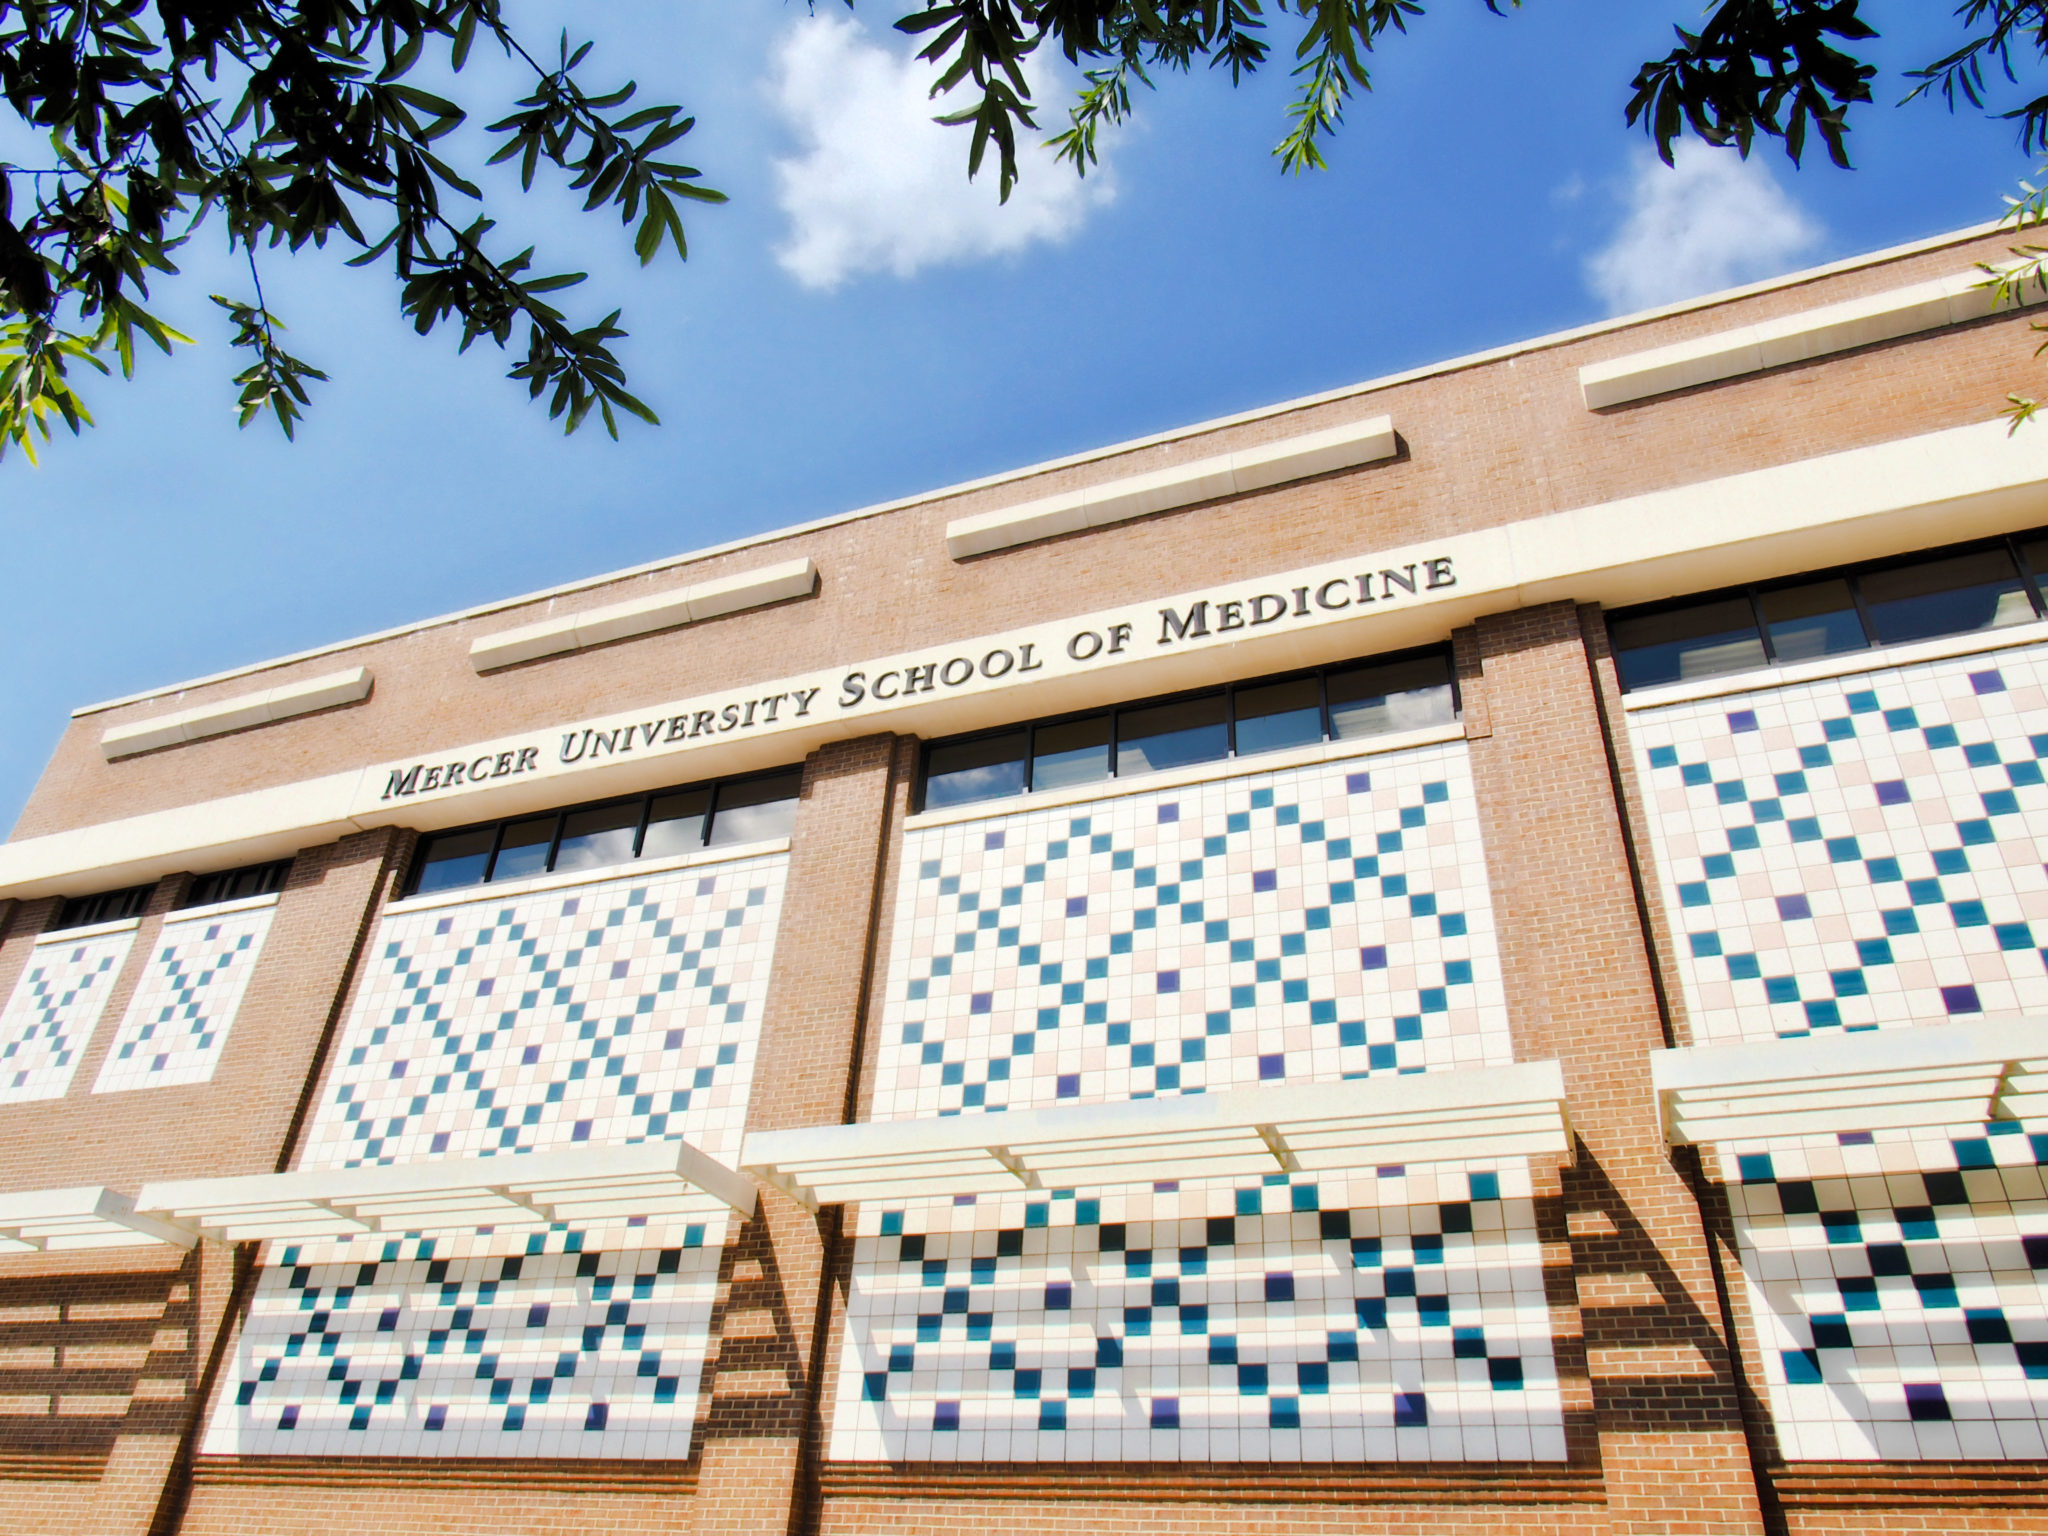 Mercer University School of Medicine